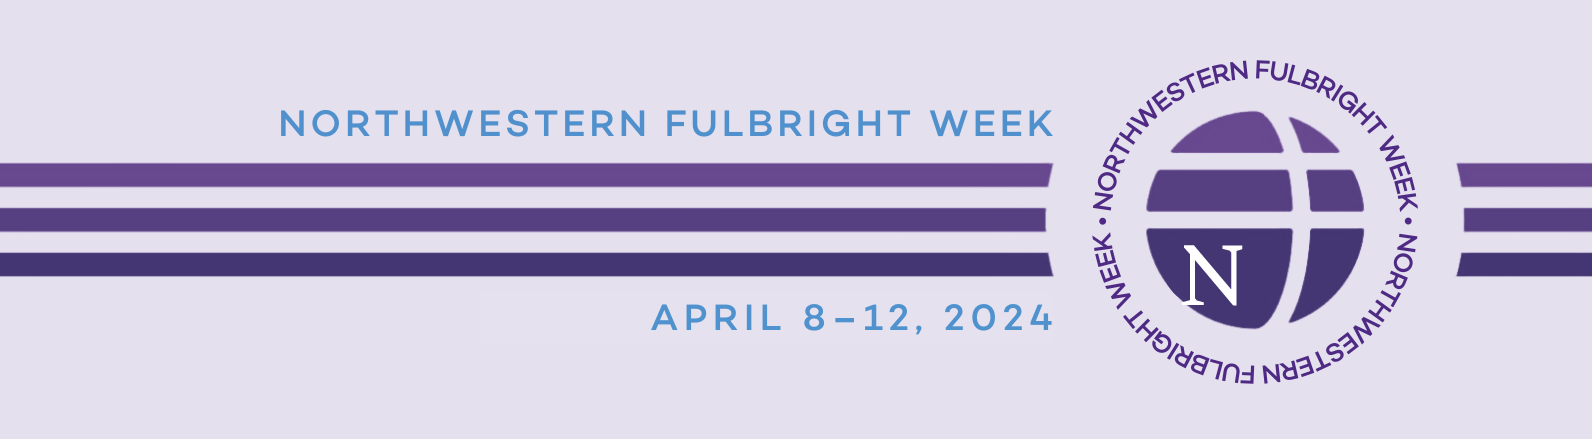 fulbright-week-website-banner-2024.png